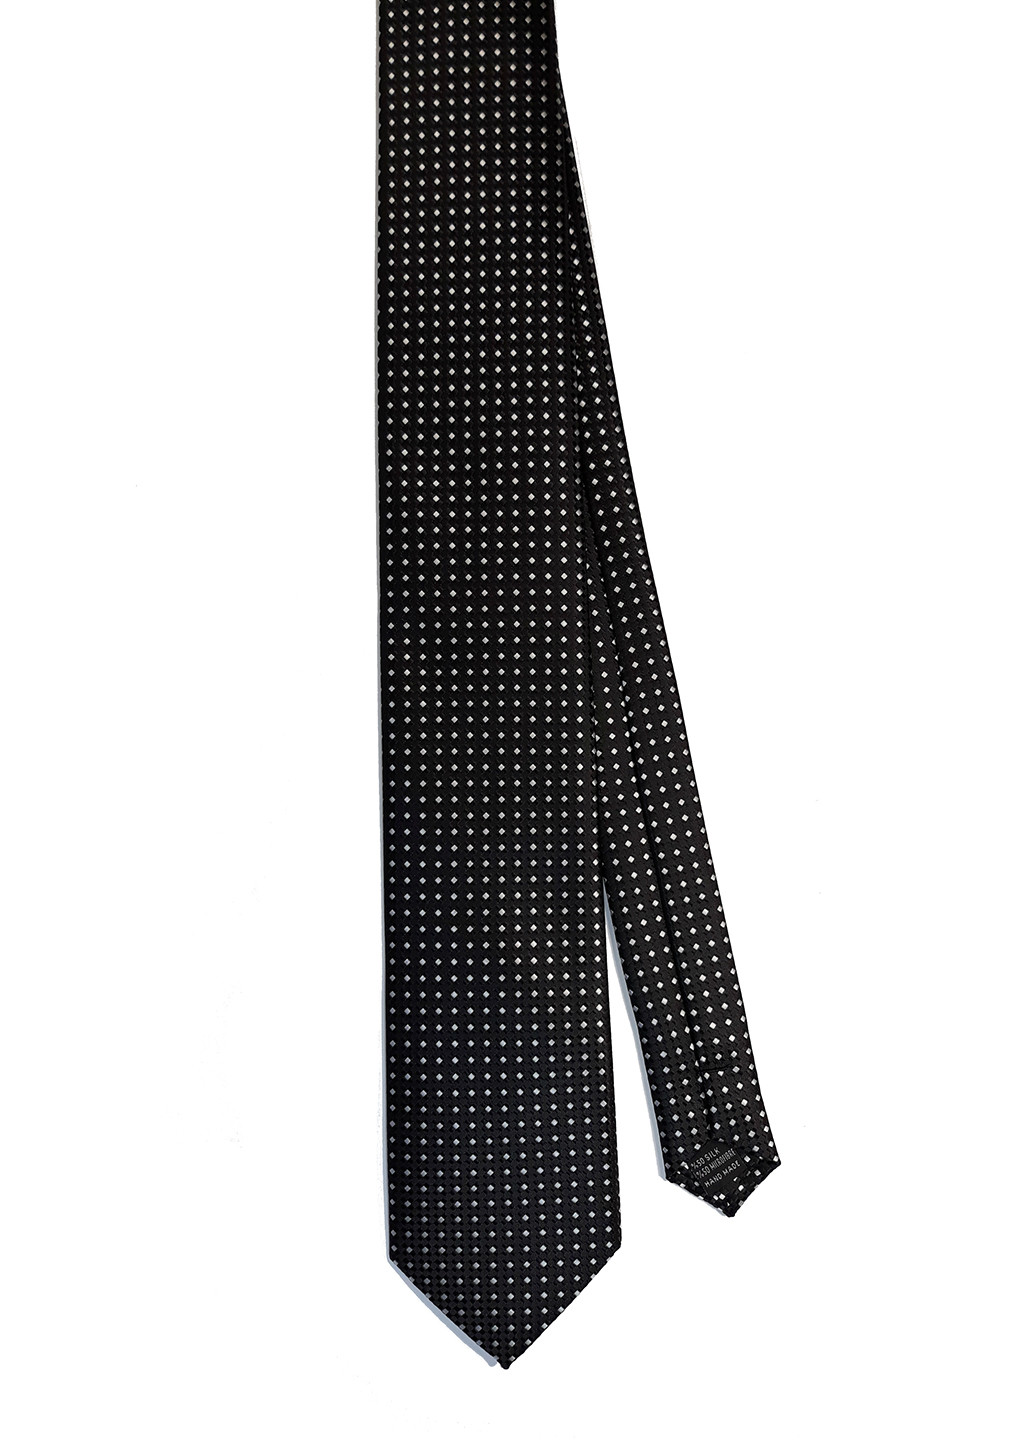 Галстук Franco Riveiro стандартный абстрактный чёрный шелк